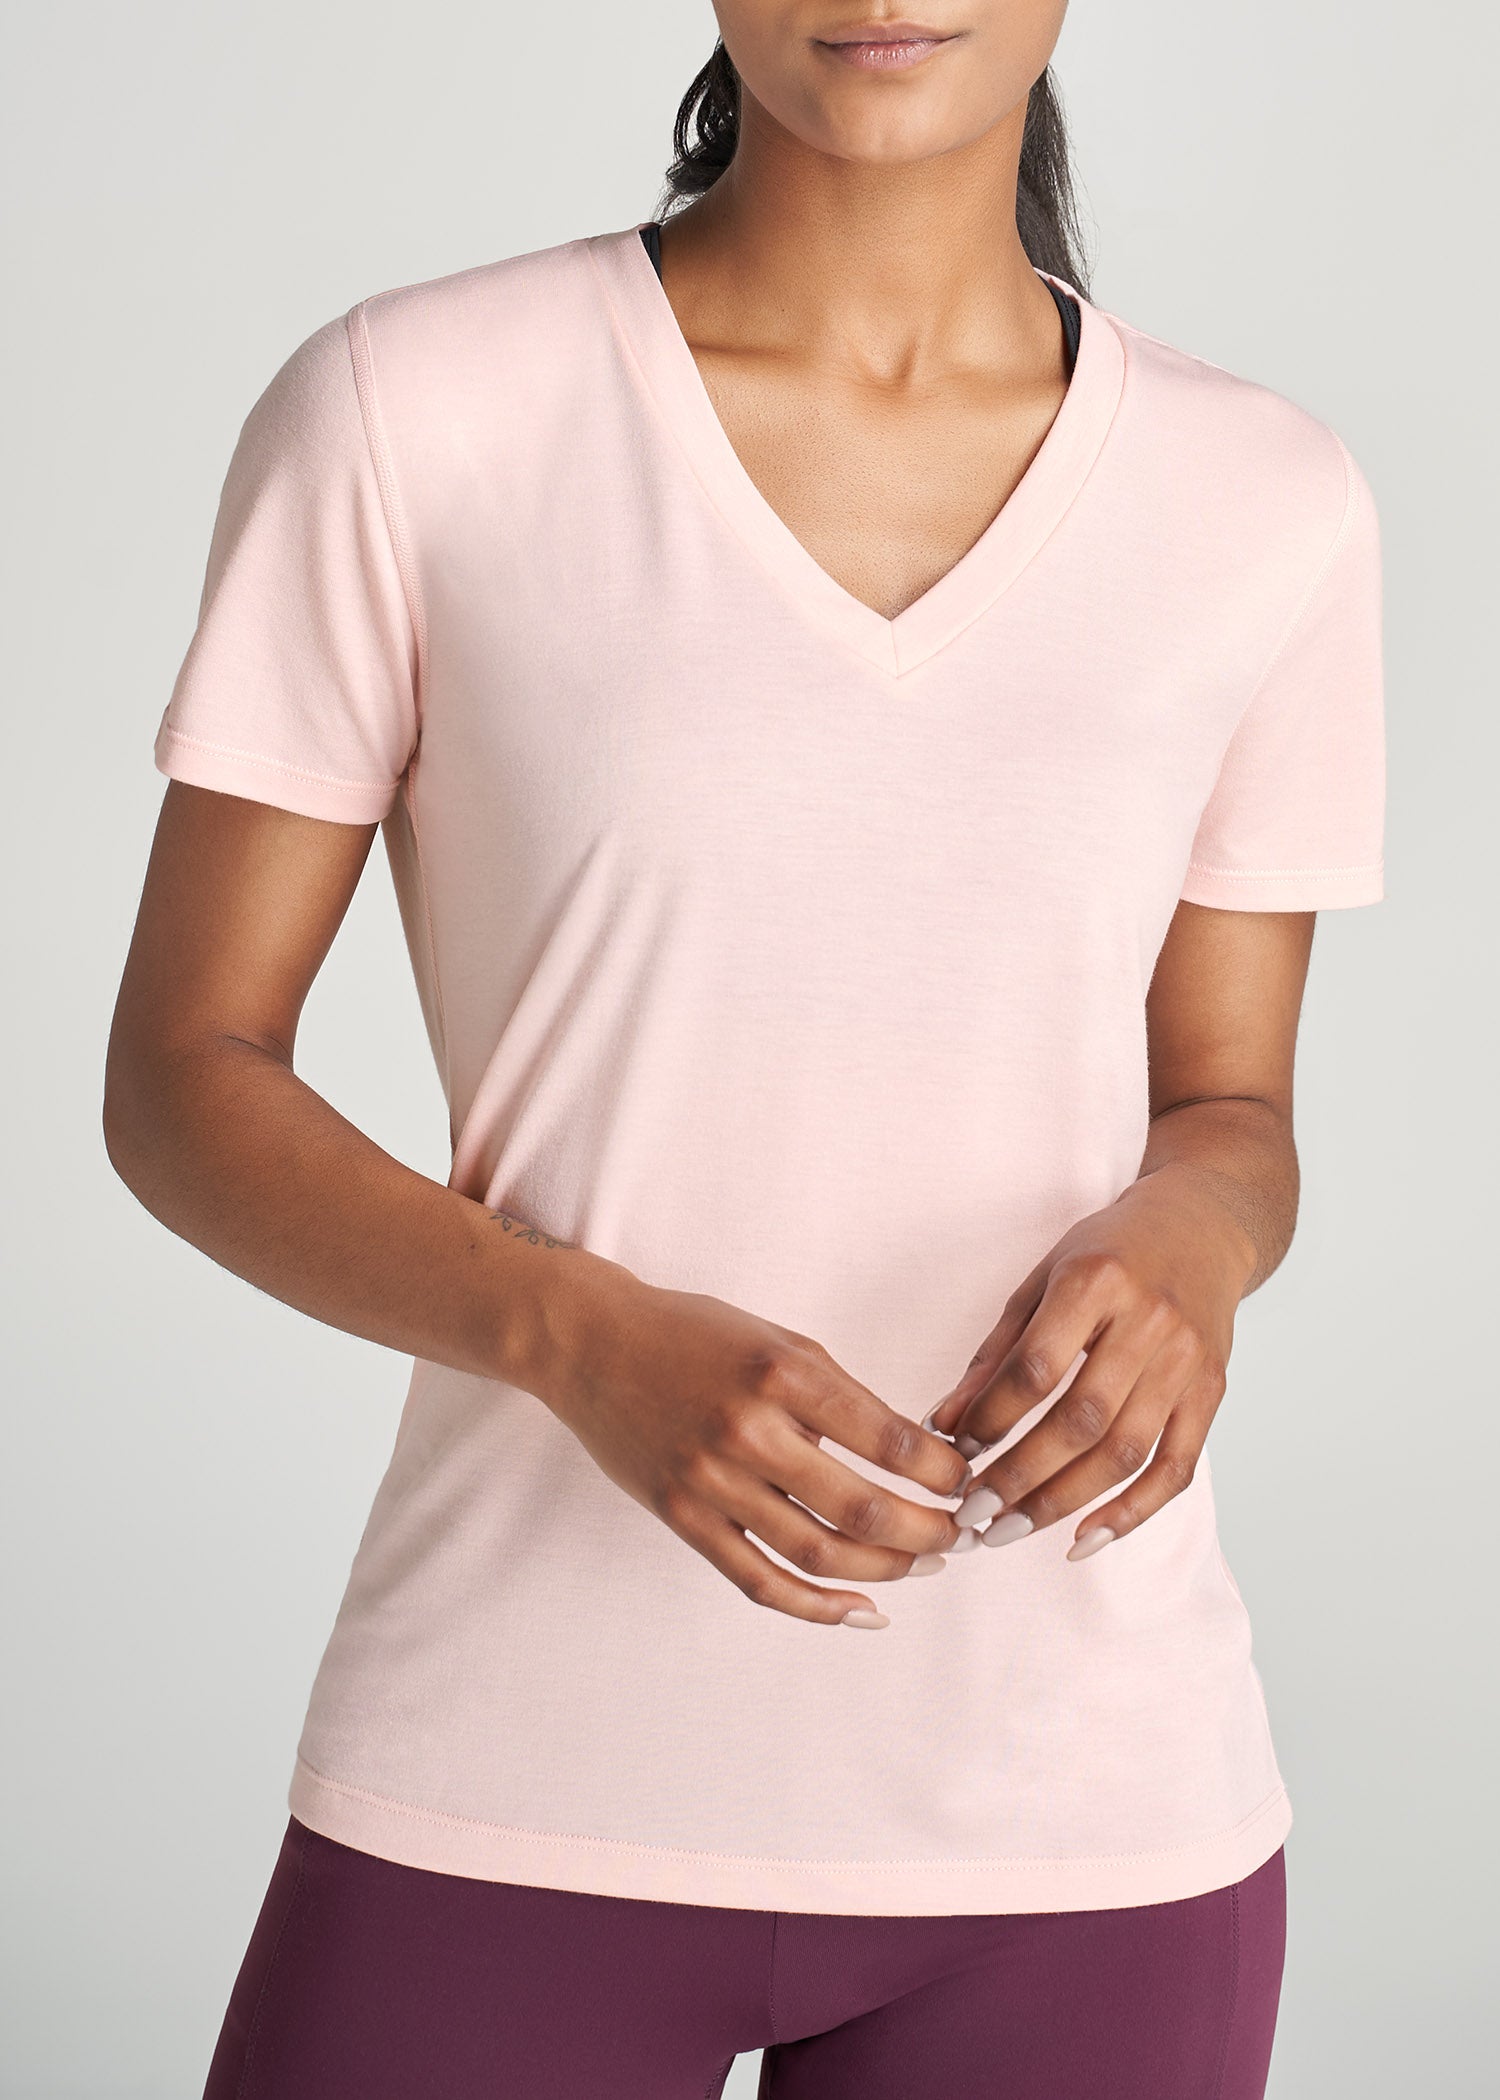 T-shirt - Light pink - Ladies